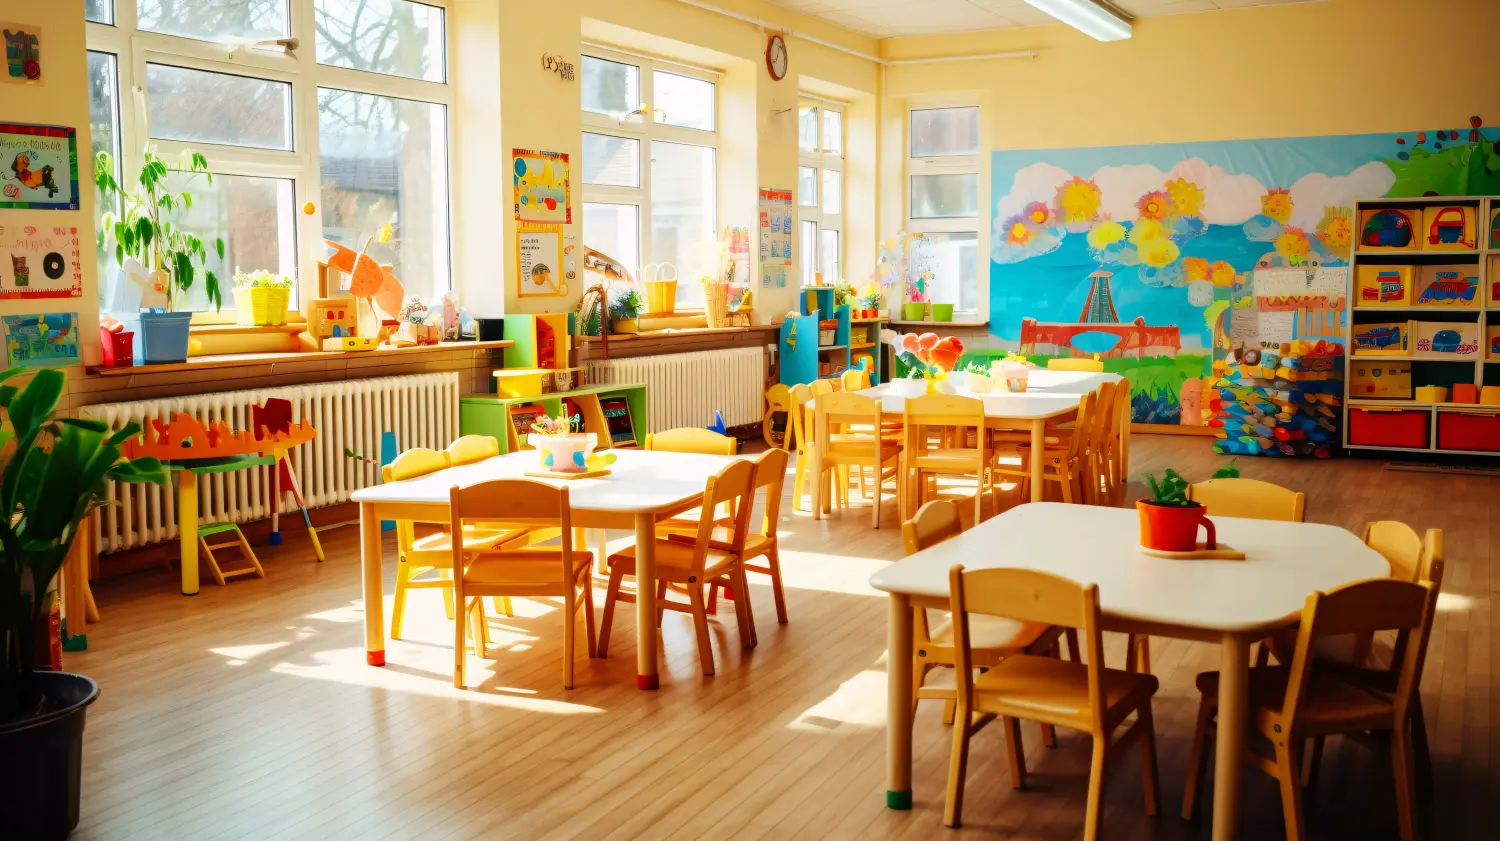 Reinigung des Kindergarten-Klassenzimmers